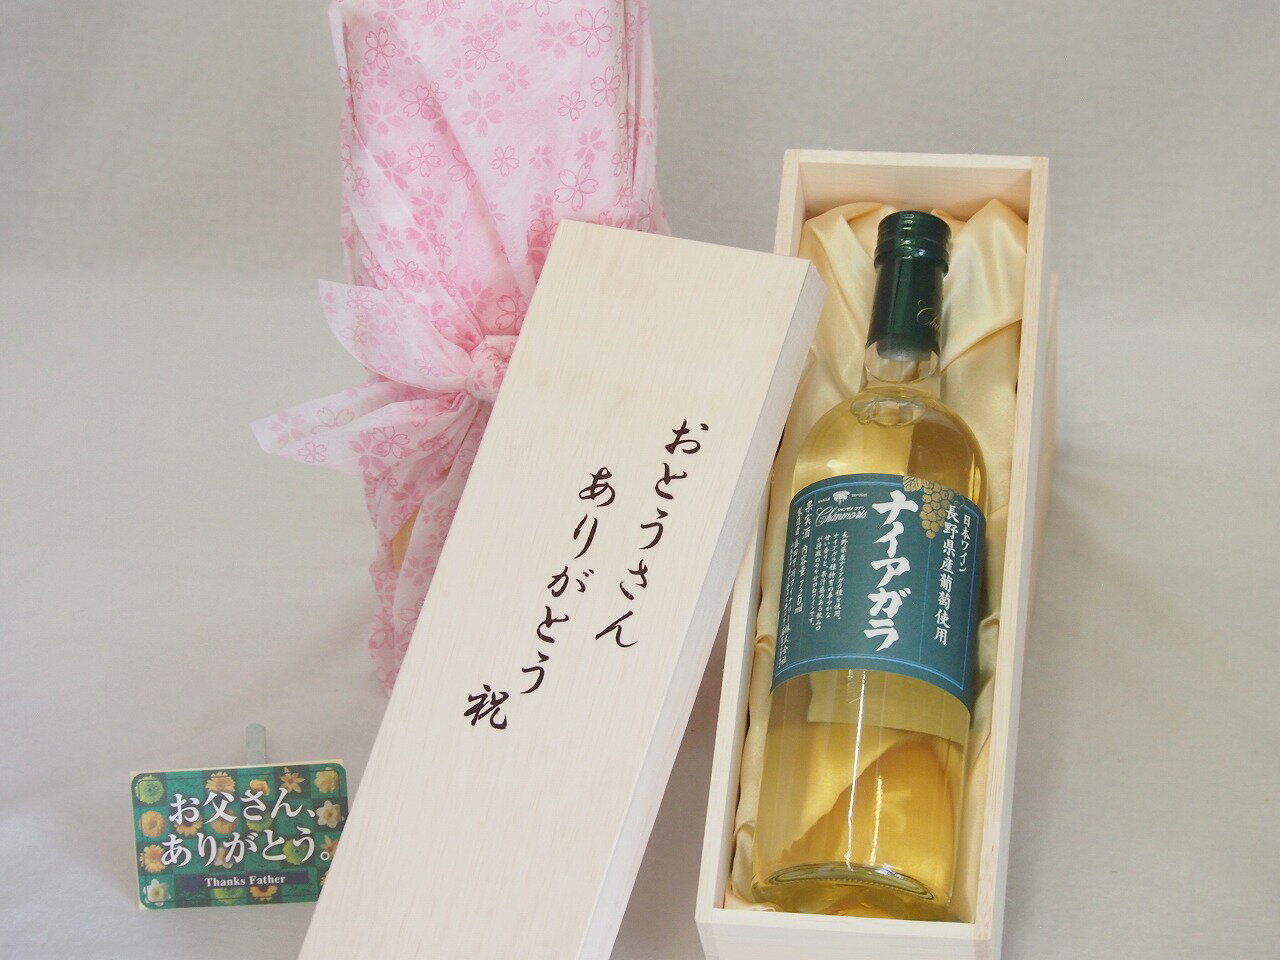 父の日 おとうさんありがとう木箱セット 長野県葡萄使用ナイアガラ 白ワイン 山梨県 720ml 父の日カード付